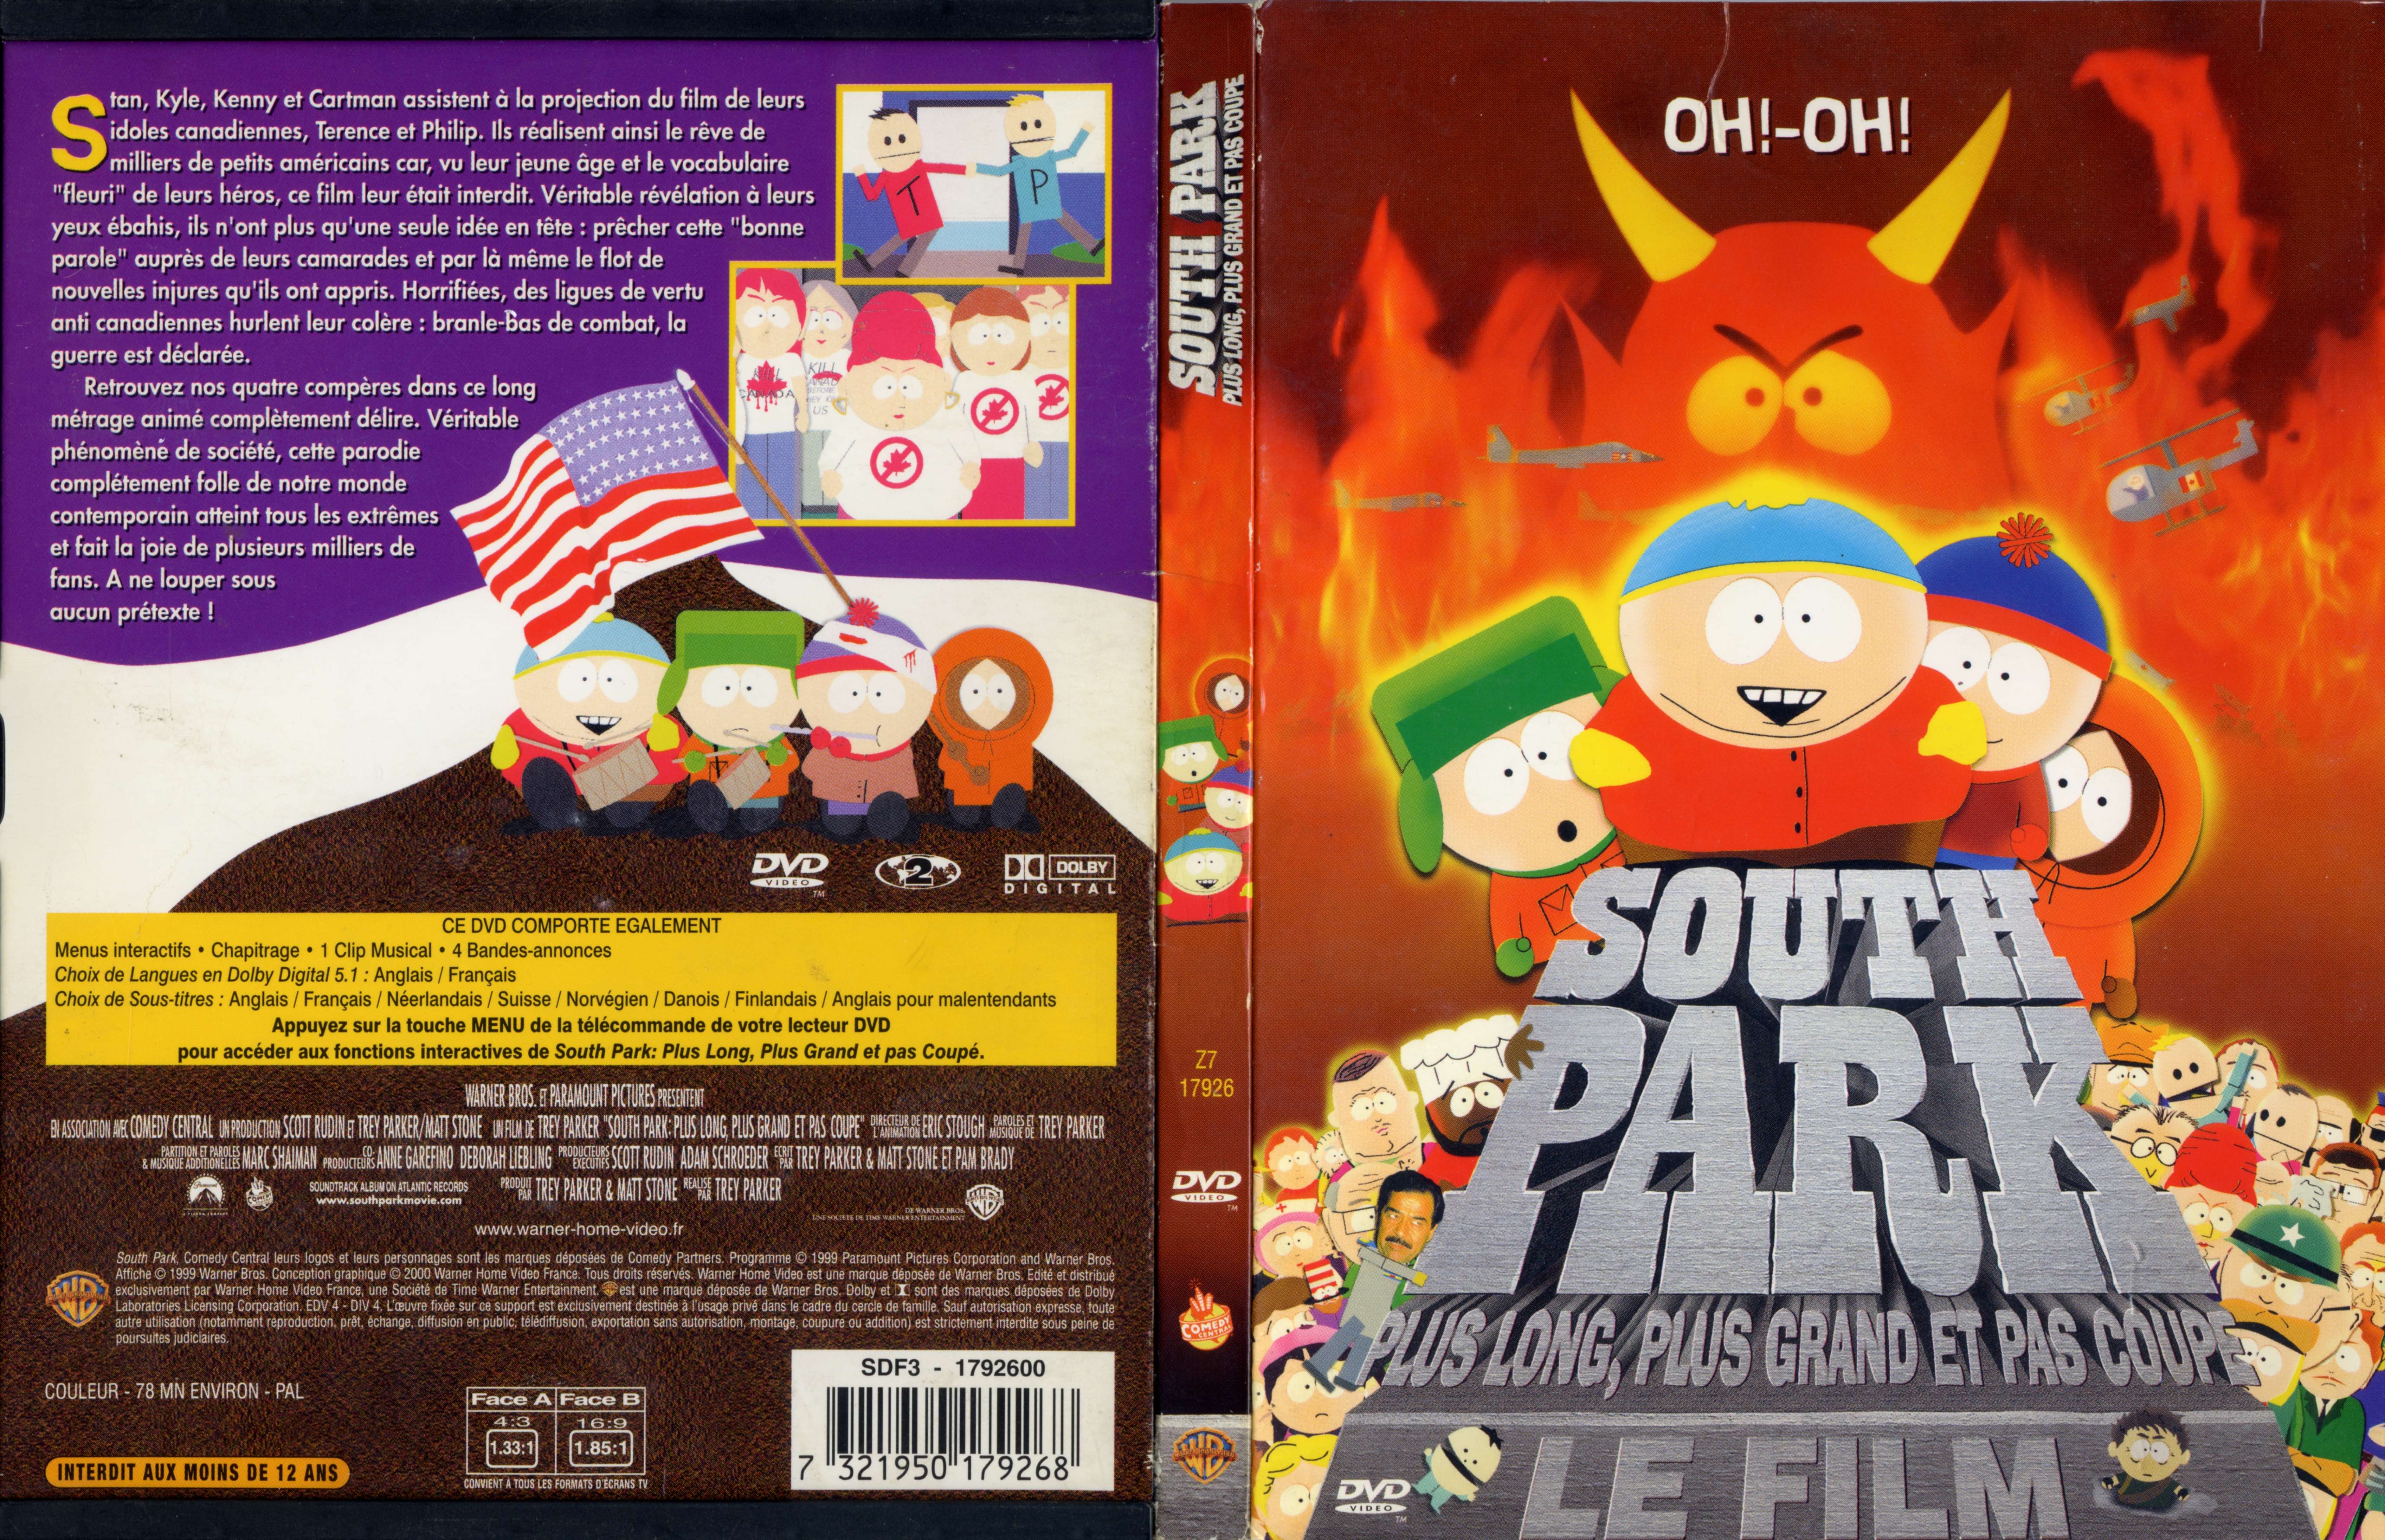 Jaquette DVD South park le film